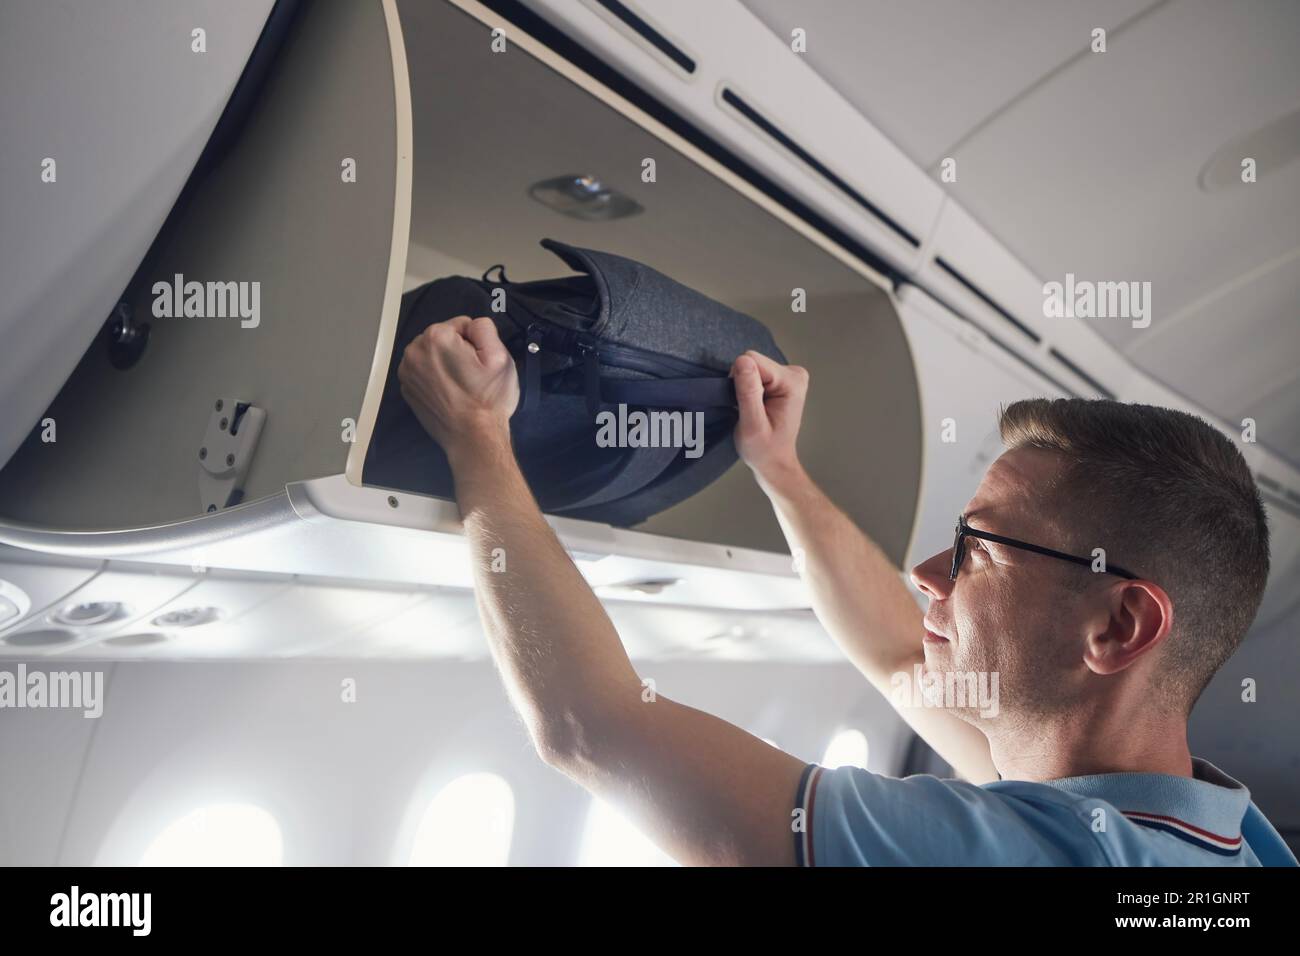 L'uomo viaggia in aereo. Il passeggero mette il bagaglio a mano in armadietti sopra i sedili dell'aereo. Foto Stock